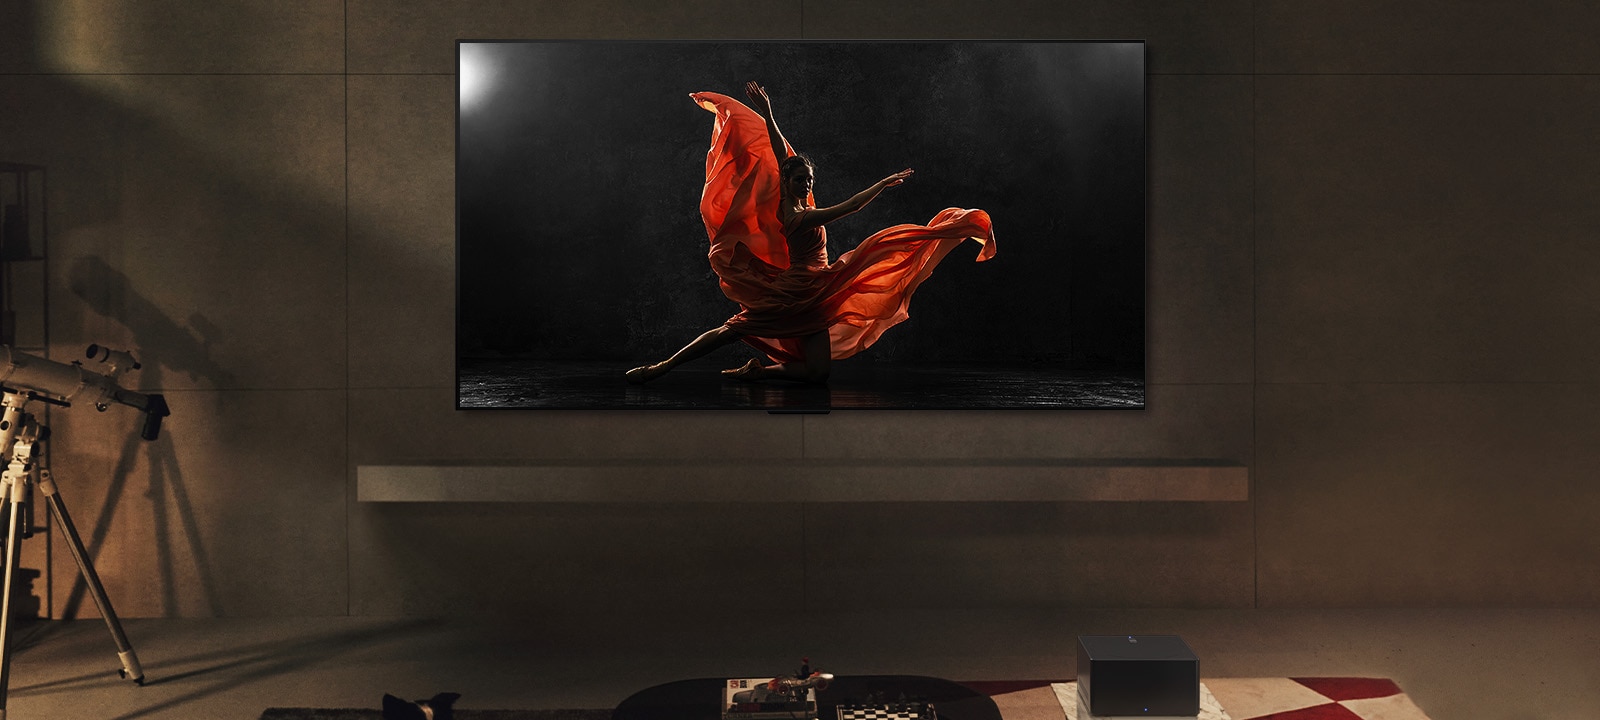 LG SIGNATURE OLED M4 e LG Soundbar numa sala de estar moderna durante a noite. A imagem no ecrã de um bailarino num palco escuro é apresentada com os níveis de brilho ideais.